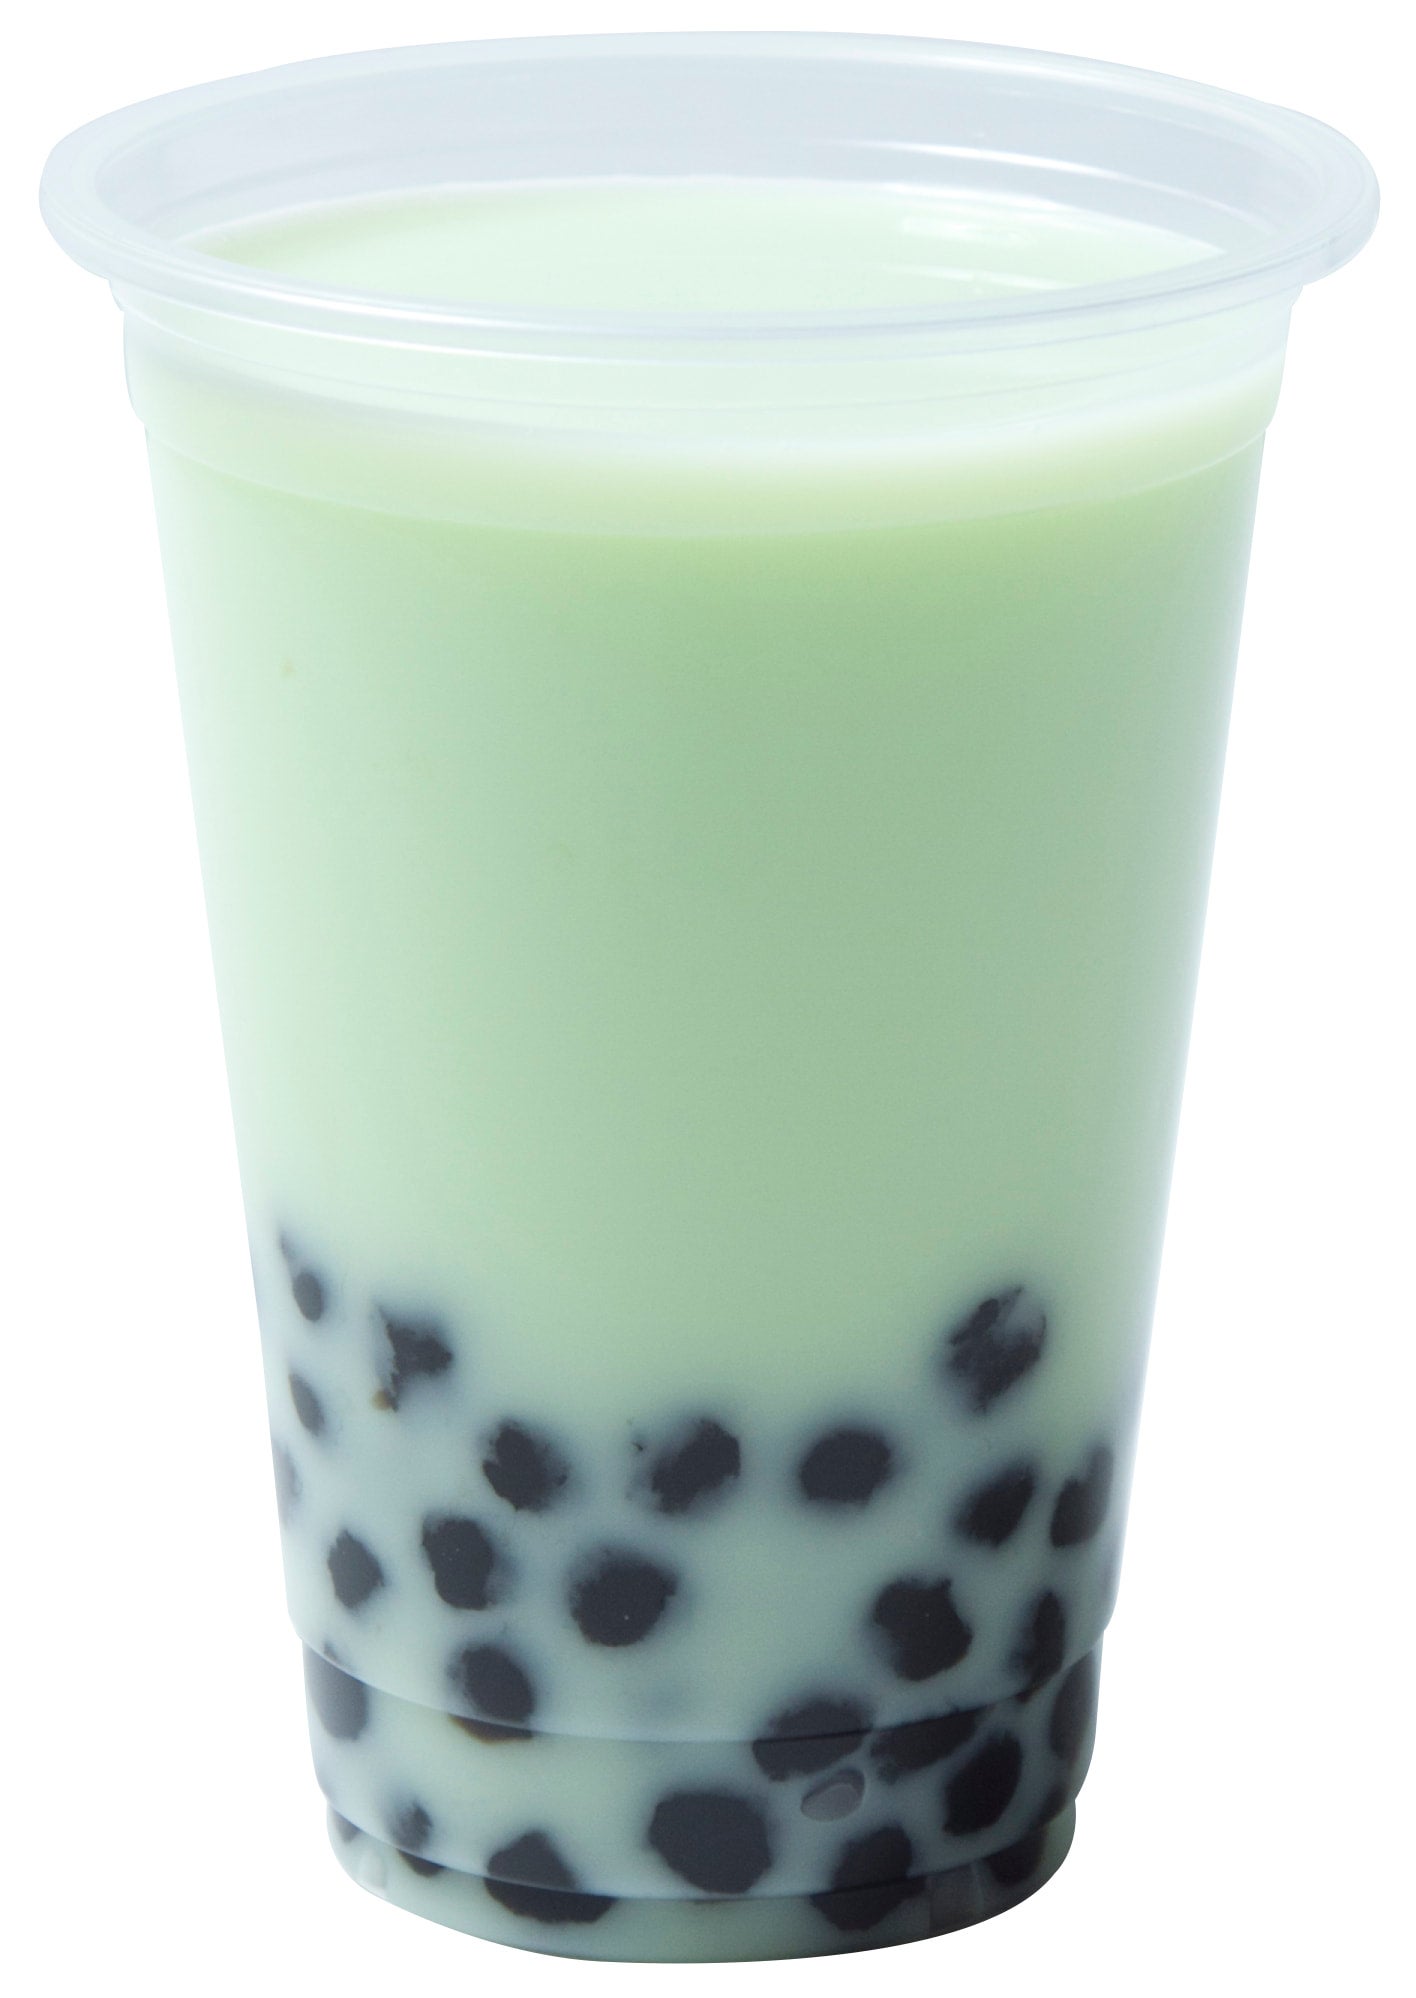 Honeydew Bubble Tea (Boba, Milk Tea) - Plant Based Jess